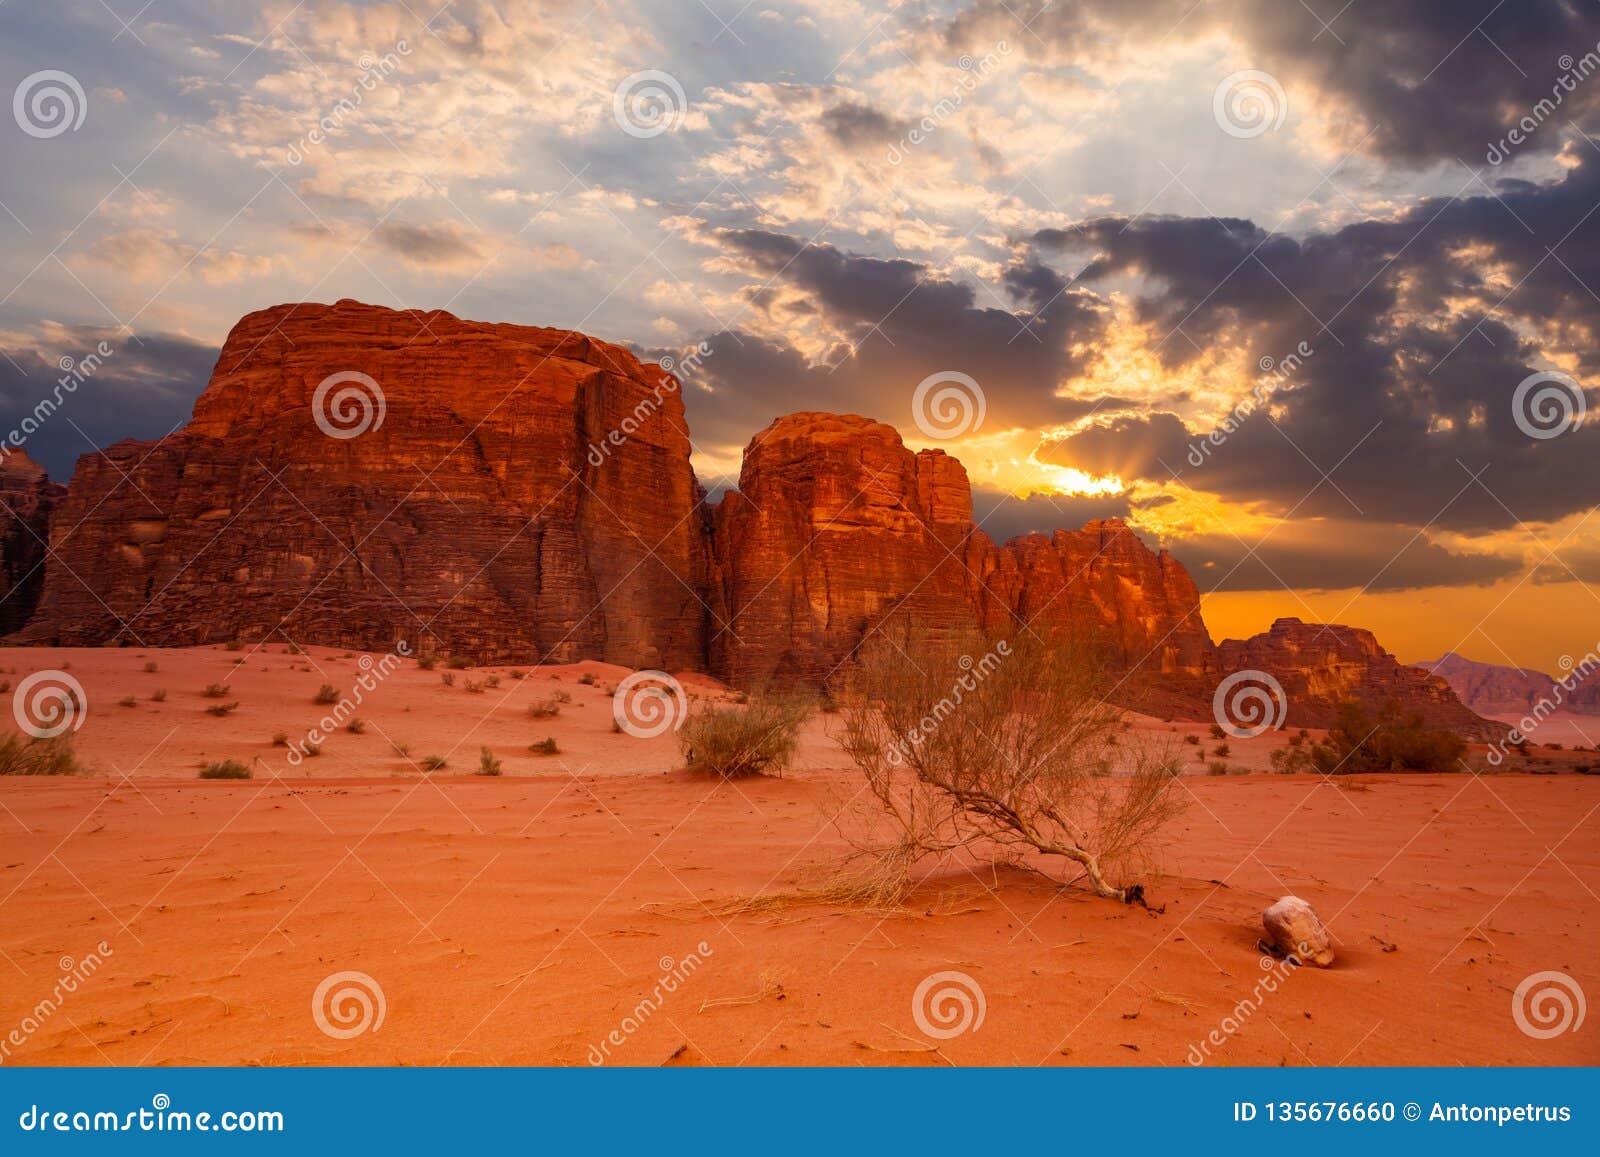 Wadi Rum Desert Landscape at Jordan Stock Photo - of nature: 135676660